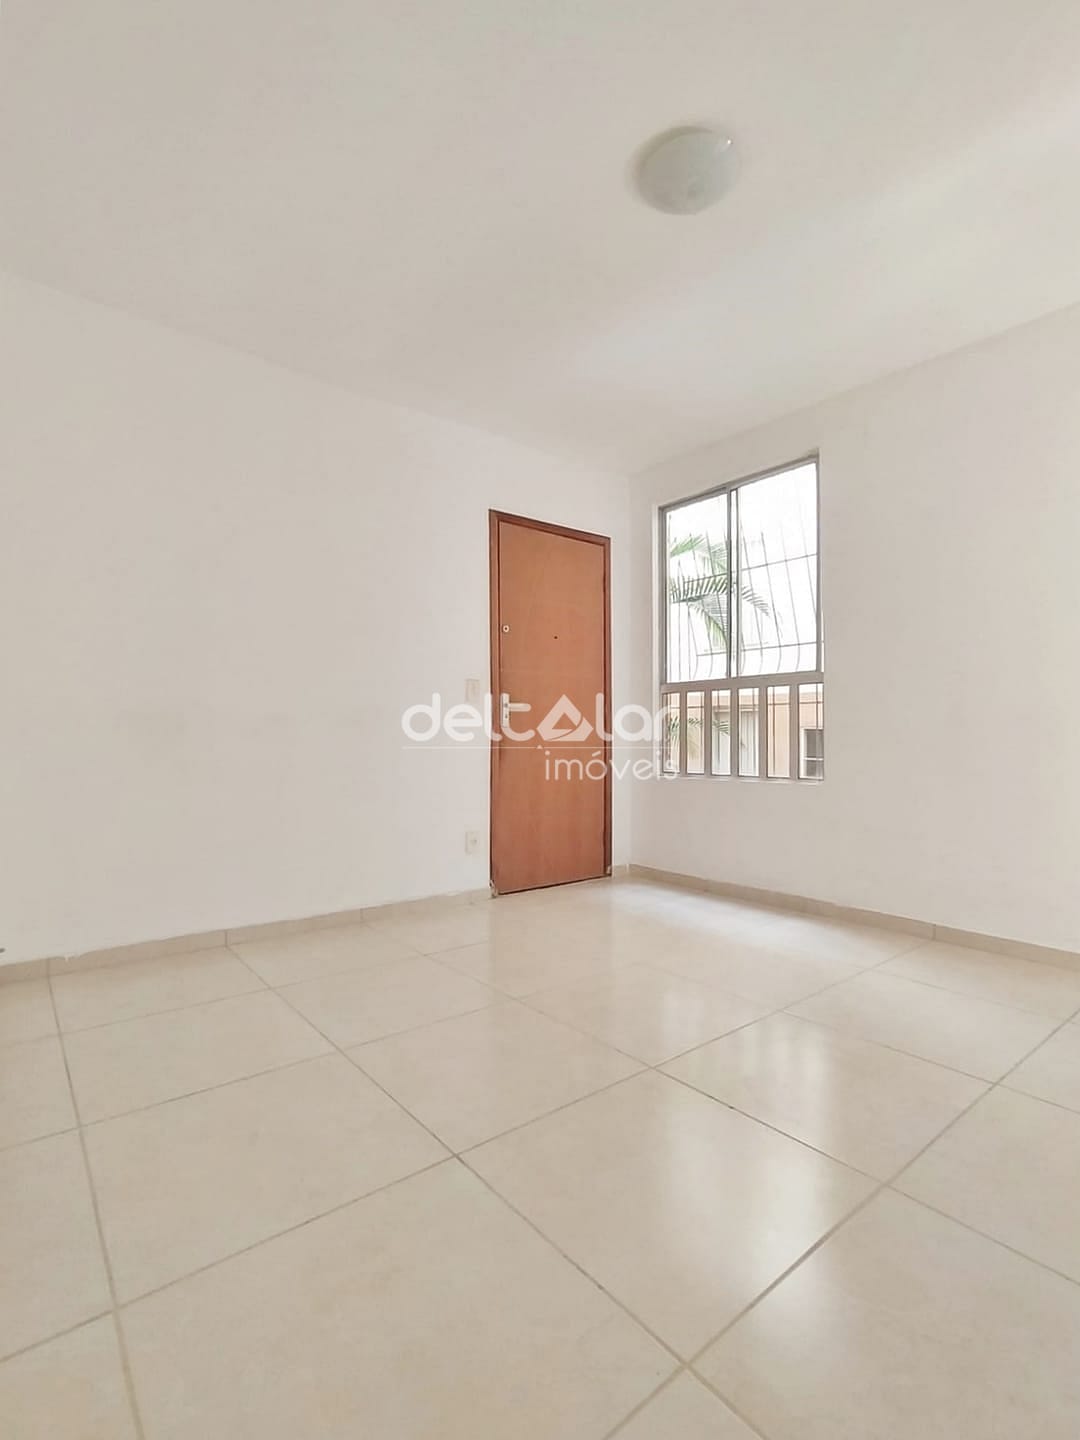 Apartamento em Juliana, Belo Horizonte/MG de 48m² 2 quartos para locação R$ 847,00/mes